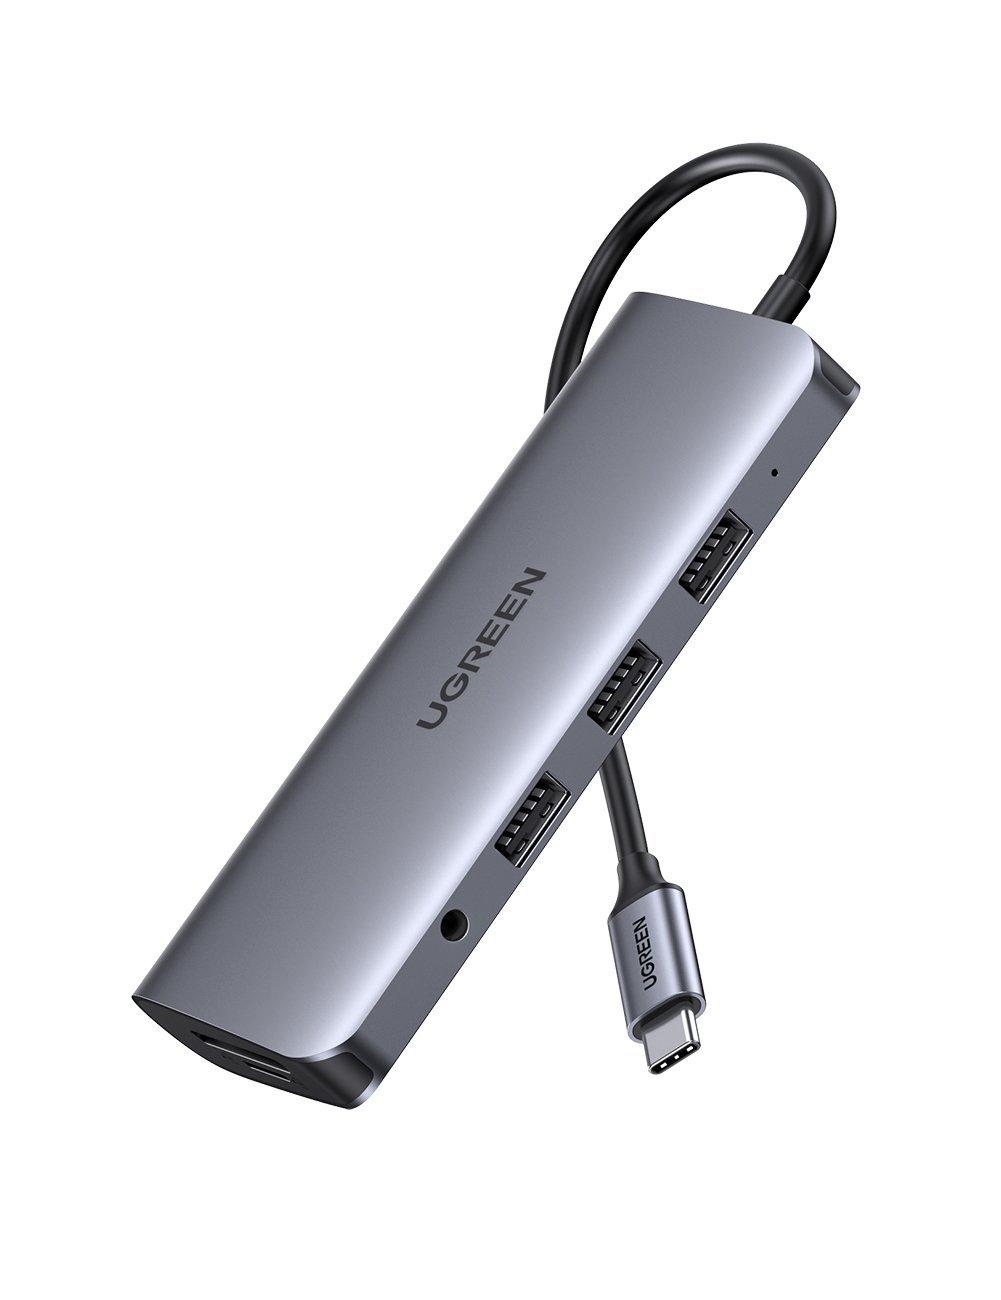 Adaptér 10v1 UGREEN HUB USB-C na HDMI 4K, 3x USB 3.0, Type-C PD, RJ45, SD, Micro SD, VGA, AUX (šedý)